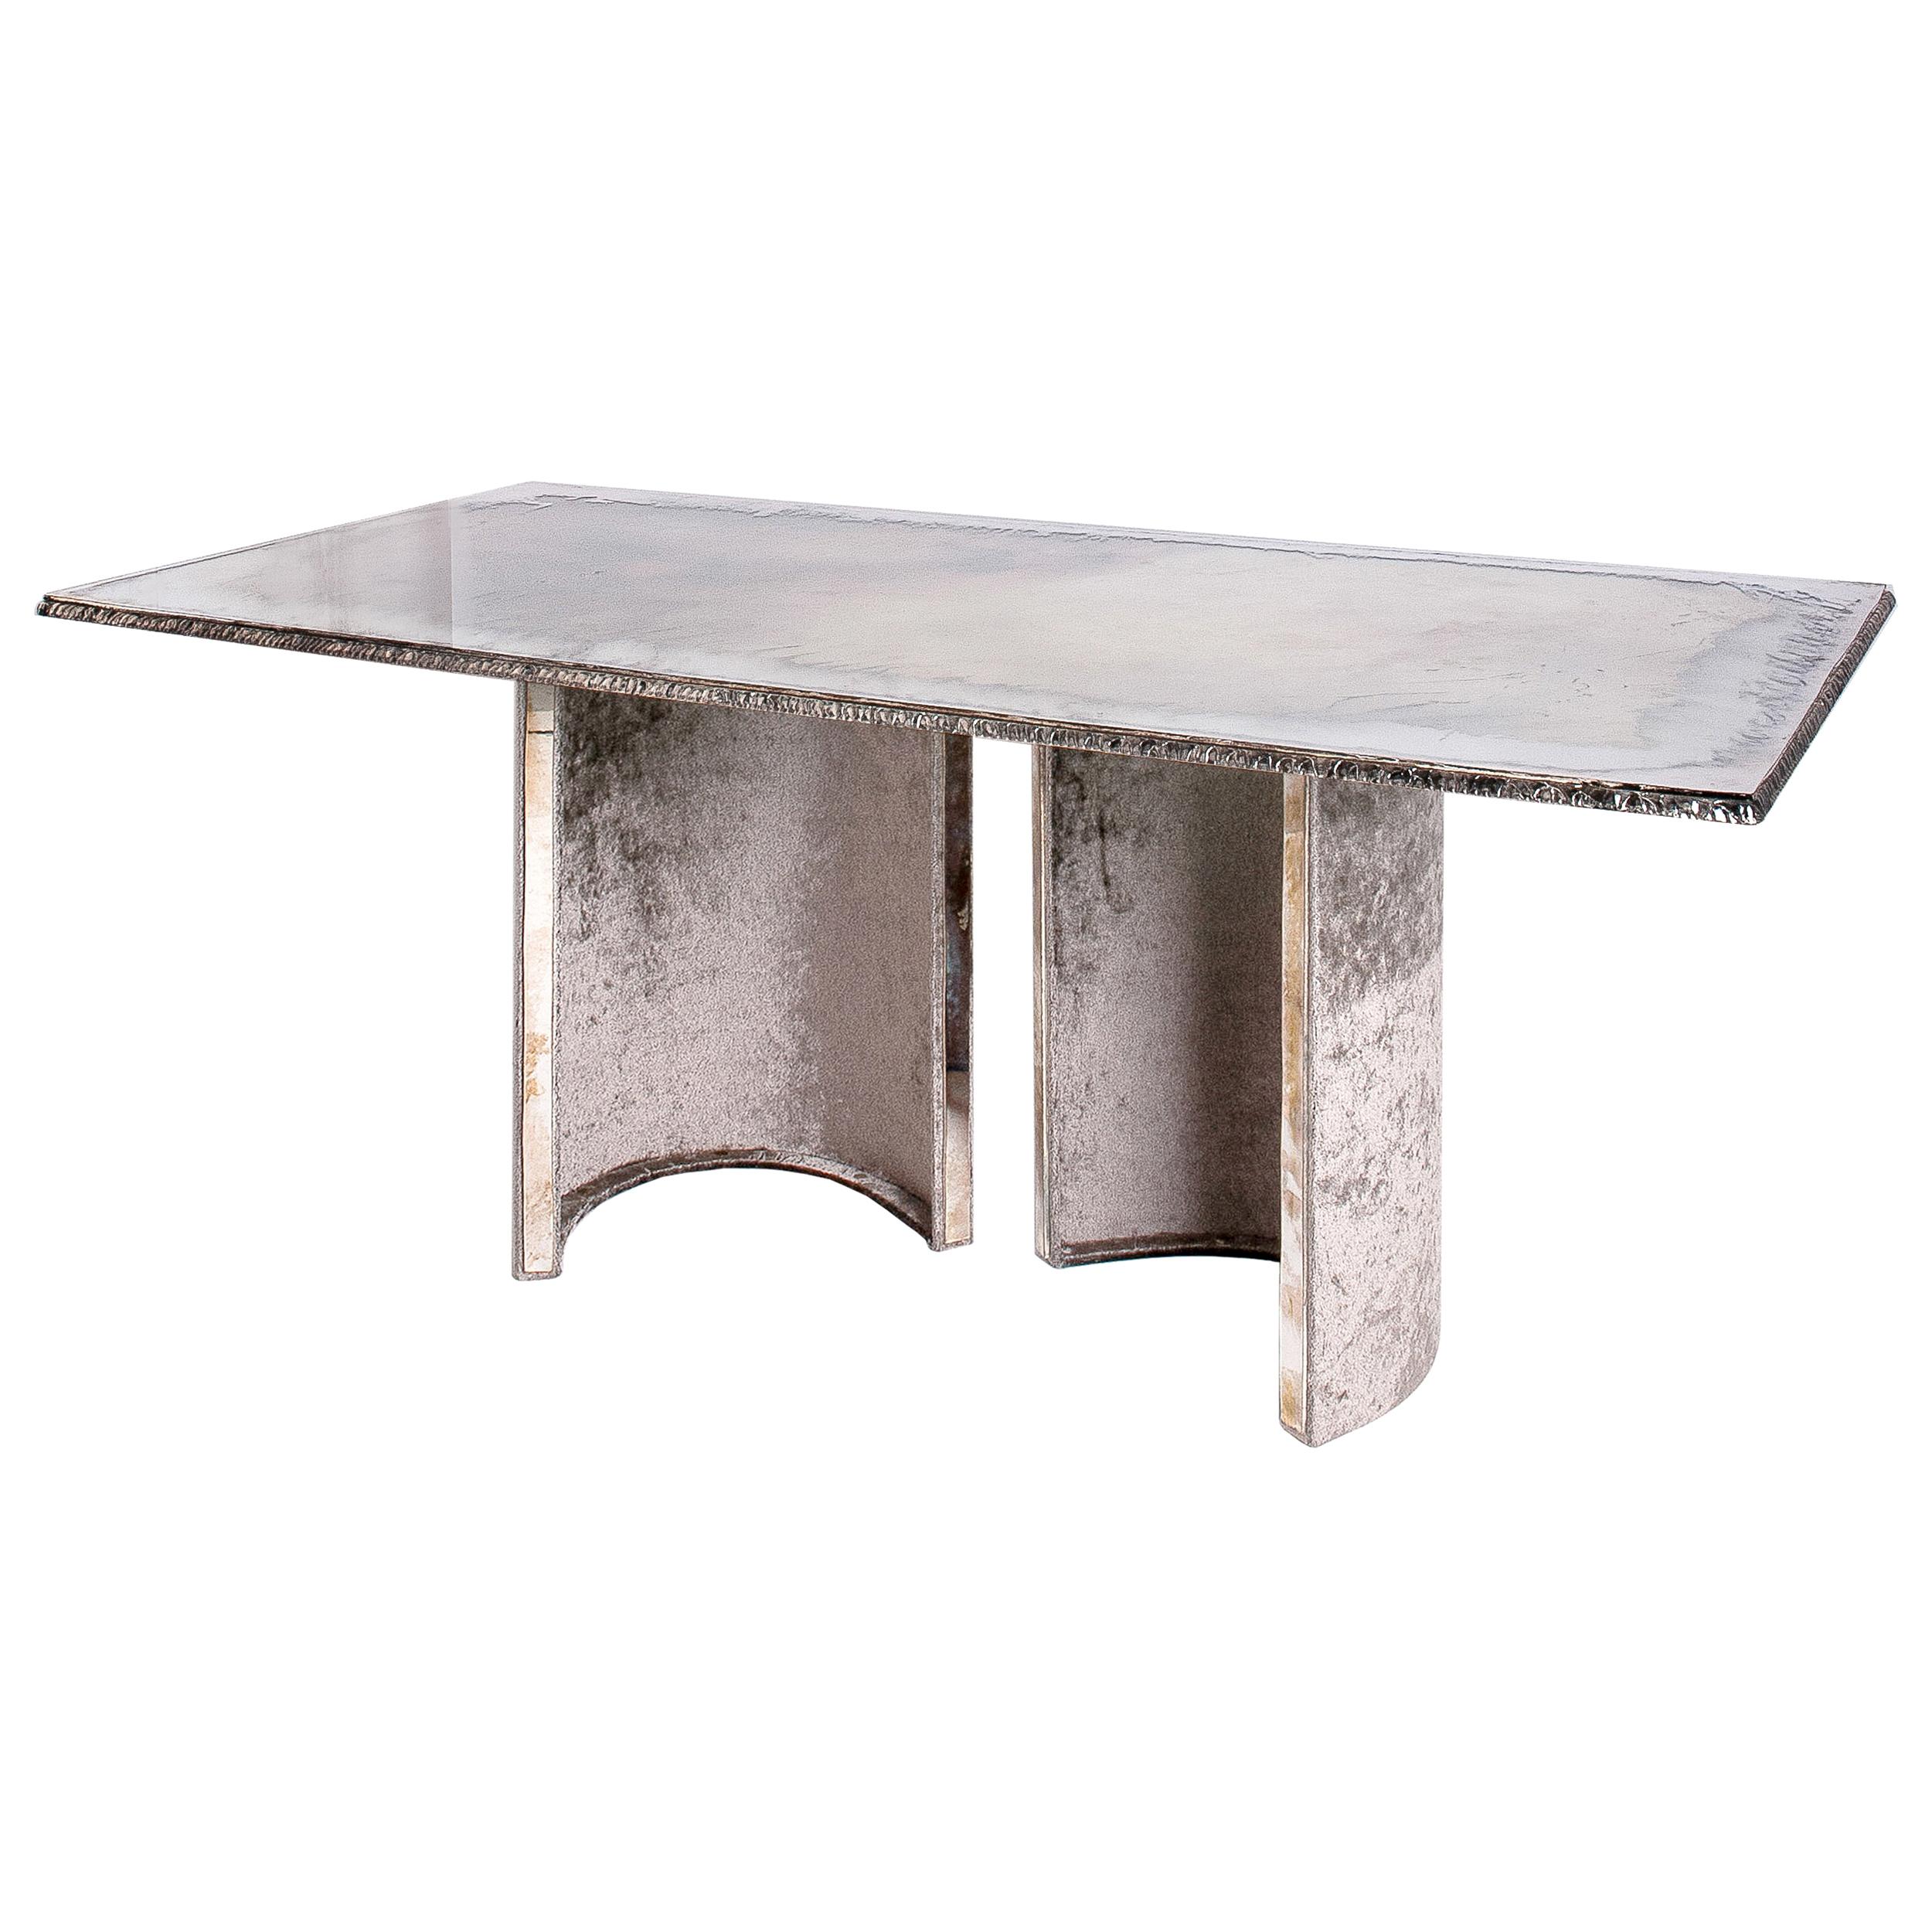 Die Tische Sabrina Landini GEM kombinieren einen modernen, zeitgenössischen Stil mit Details, die von unserer Glastradition inspiriert sind. Sie interpretieren unsere legendären Glieder neu und setzen damit aufsehenerregende Designakzente.

Der